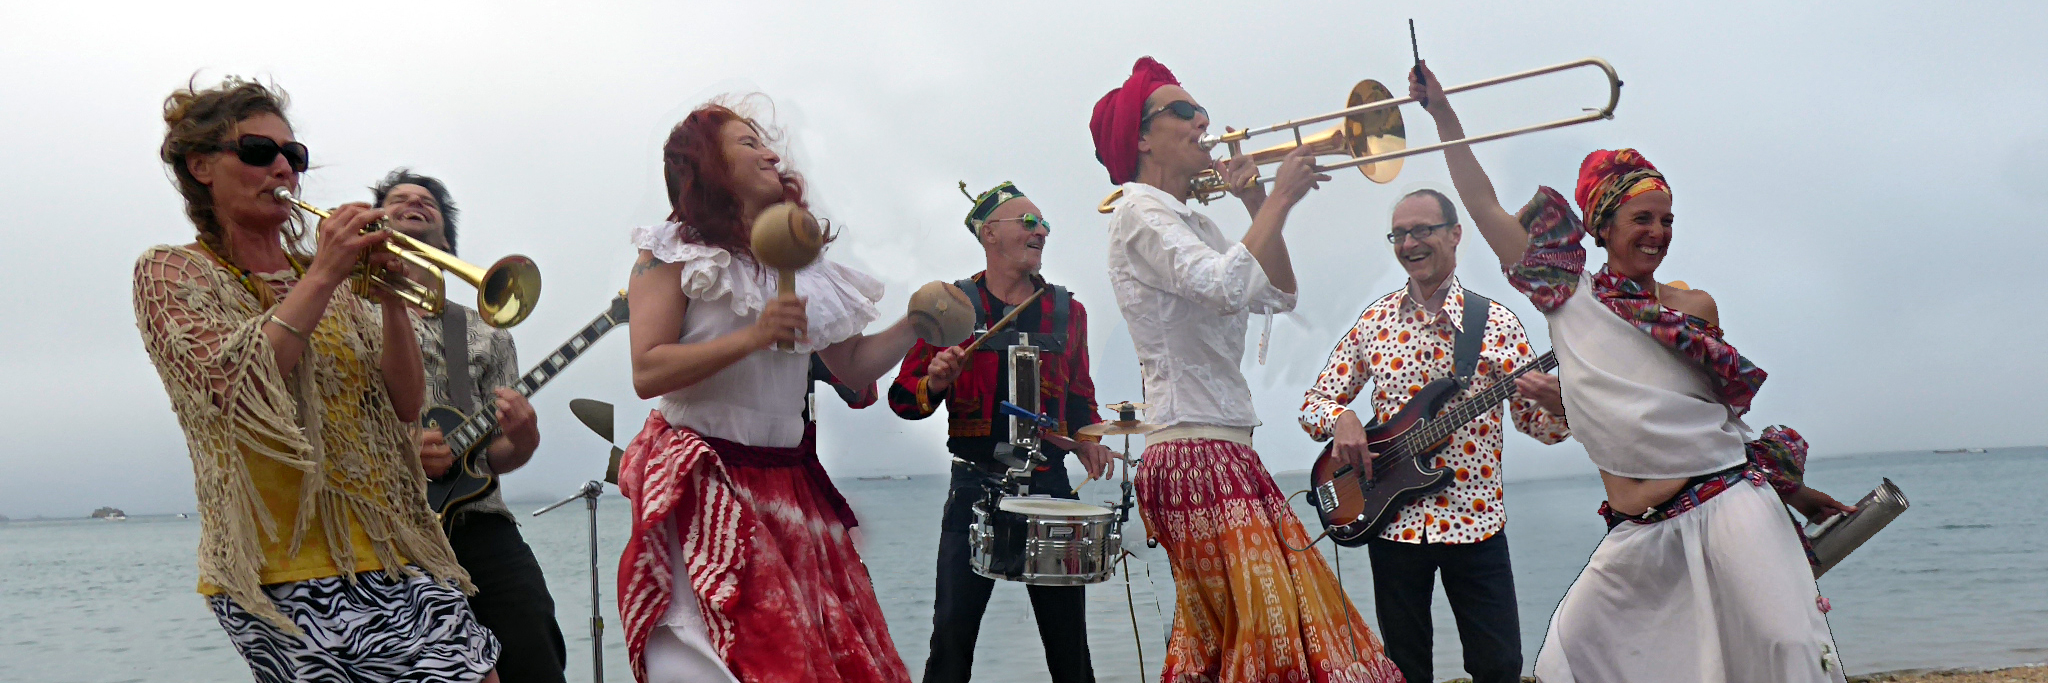 La Cosecha del Barrio Loco, groupe de musique Cumbia en représentation à Côtes d'Armor - photo de couverture n° 2